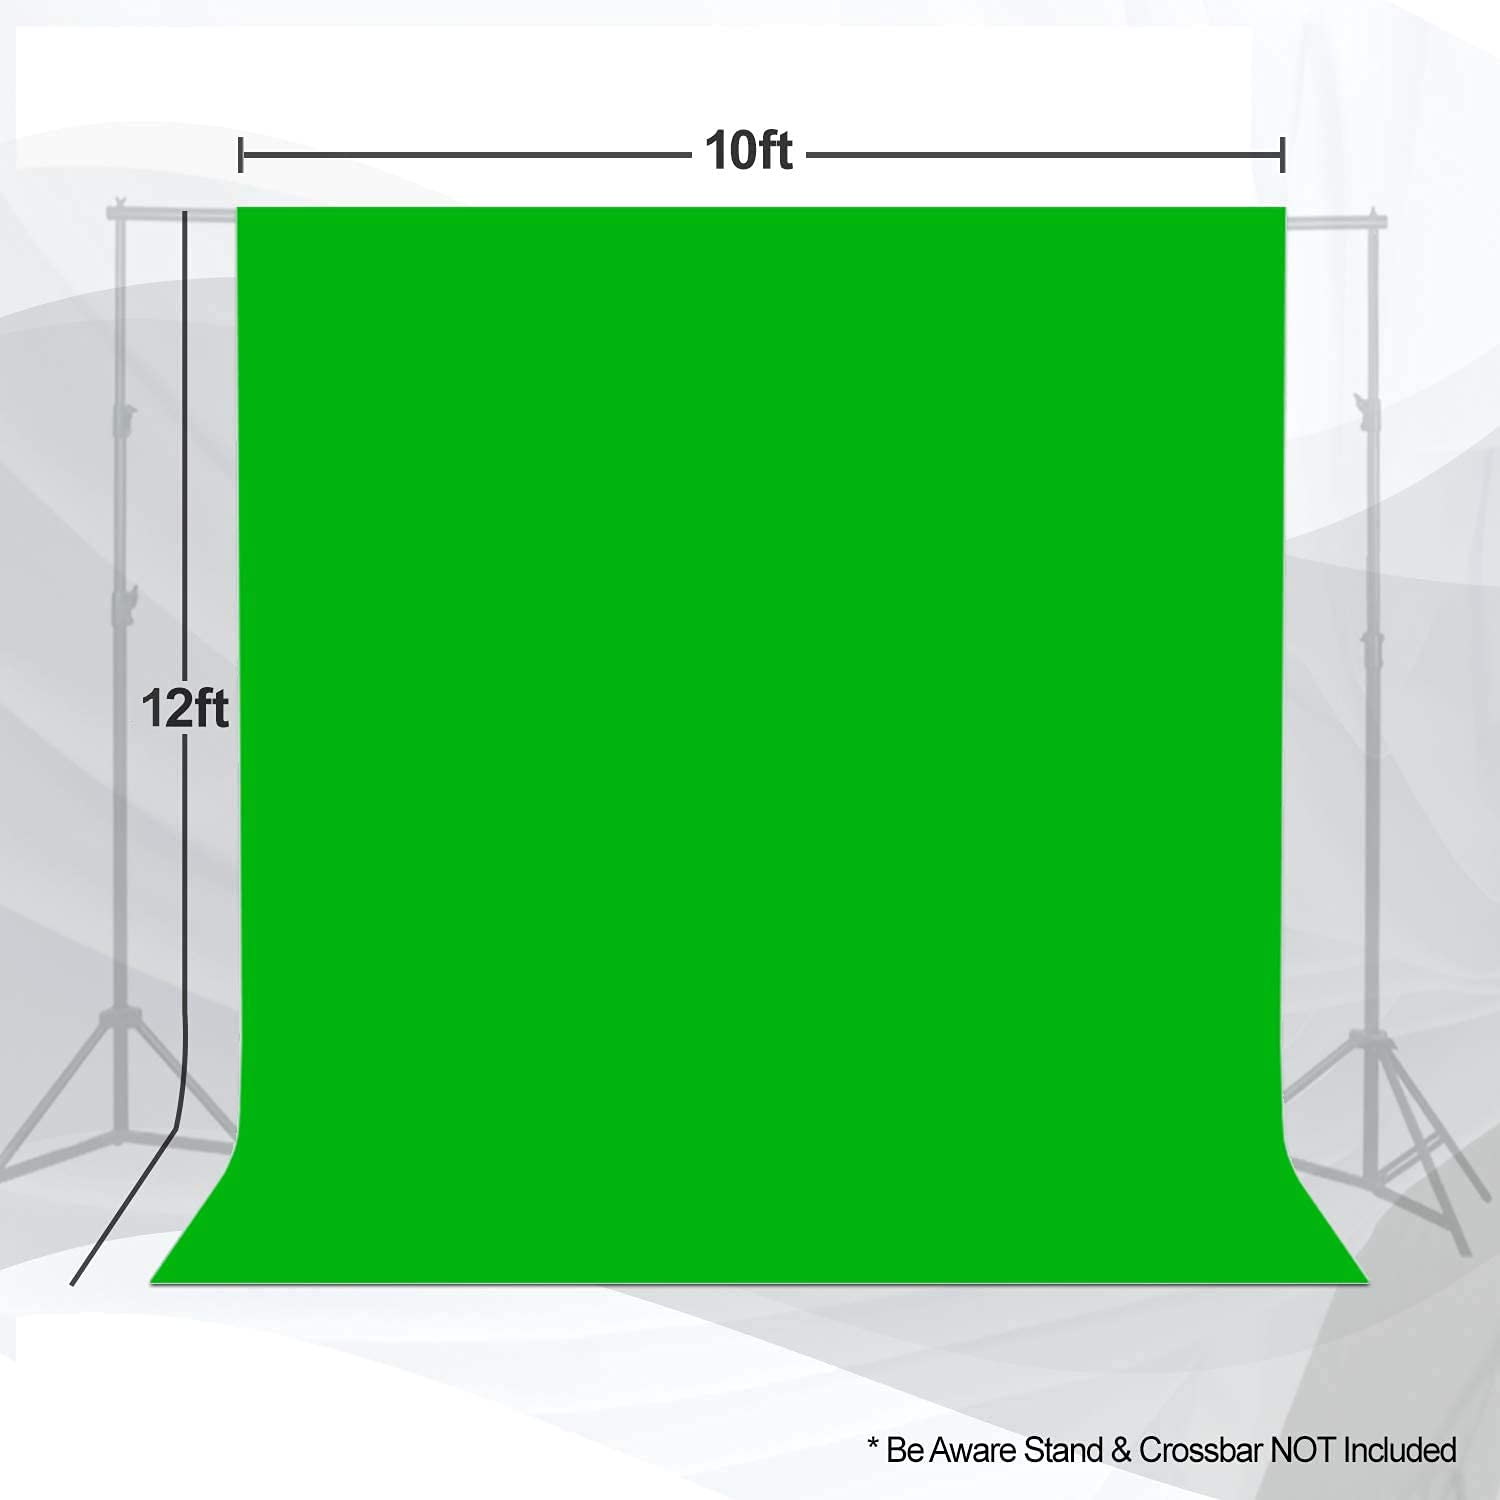 Green Screen Chromakey Backdrop là tấm vải phủ màu xanh lá cây được dùng trong các công nghệ Chromakey và xử lý hình ảnh. Xem hình ảnh để tìm hiểu về cách sử dụng các Backdrop để tạo ra các hiệu ứng hình ảnh độc đáo và đẹp mắt.